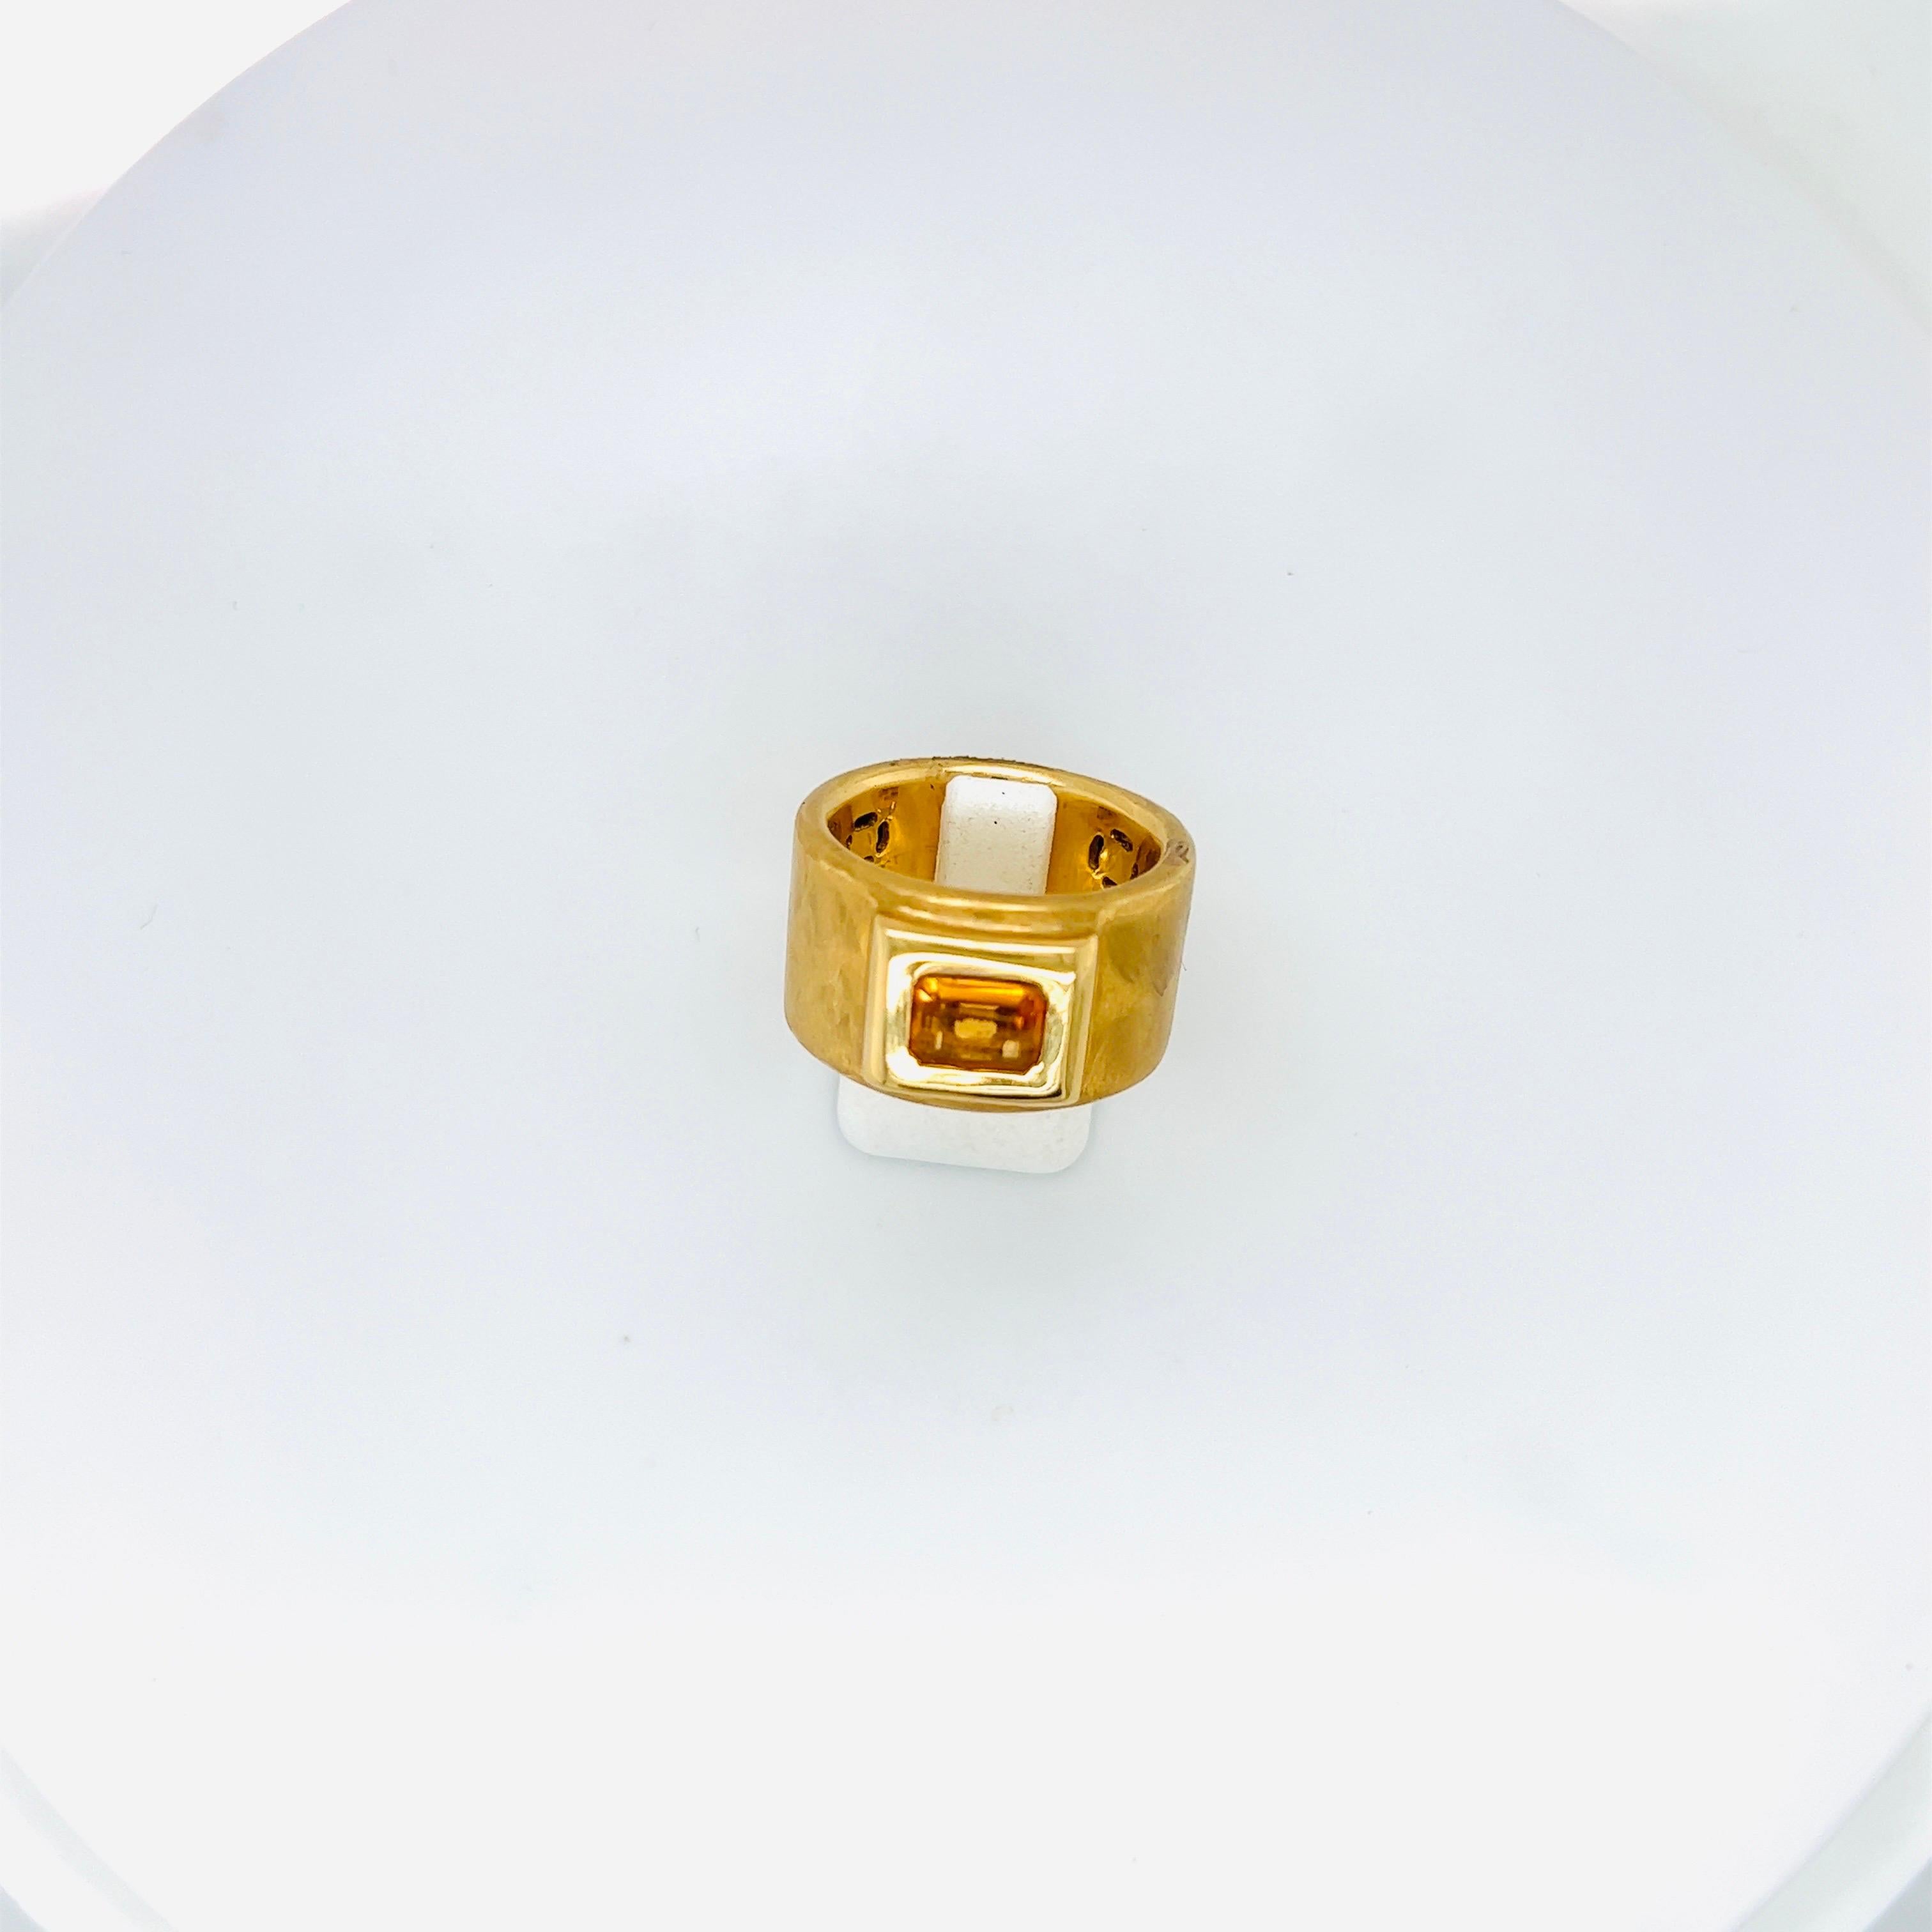 Dieser breite Ring aus 18 Karat Gelbgold wurde von Roberto Coin in Italien entworfen und mit einer satinierten Oberfläche gefertigt. Im Mittelpunkt des Rings steht ein Citrin im Smaragdschliff in einer erhöhten Fassung aus Gelbgold.
Gestempelt